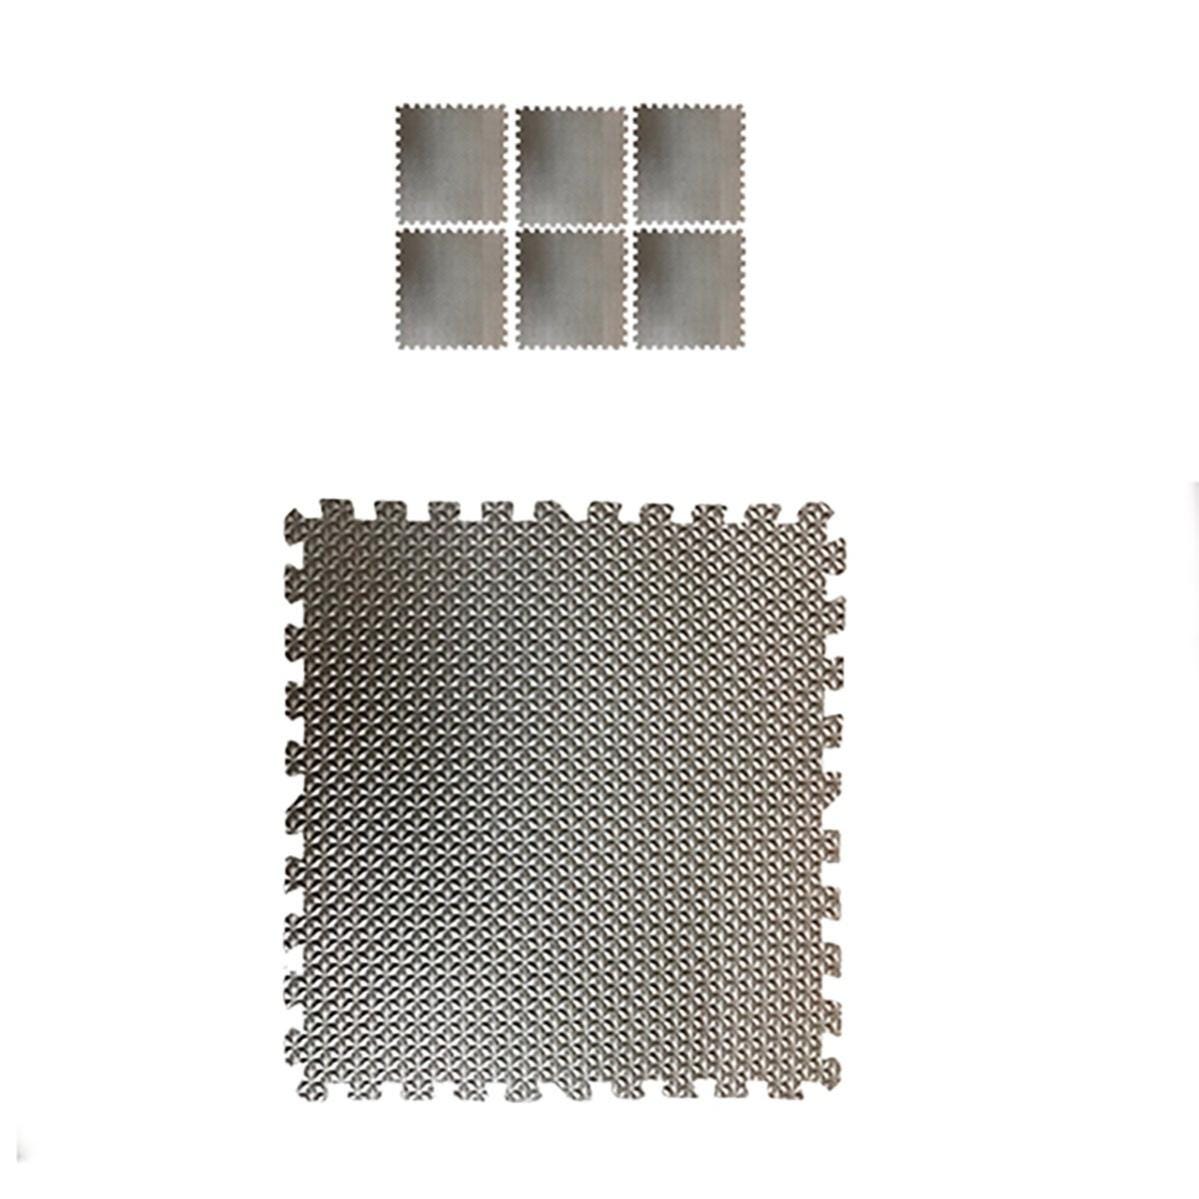 Tappetino antivibrazione in peva 620 x 620 mm, 6 pezzi